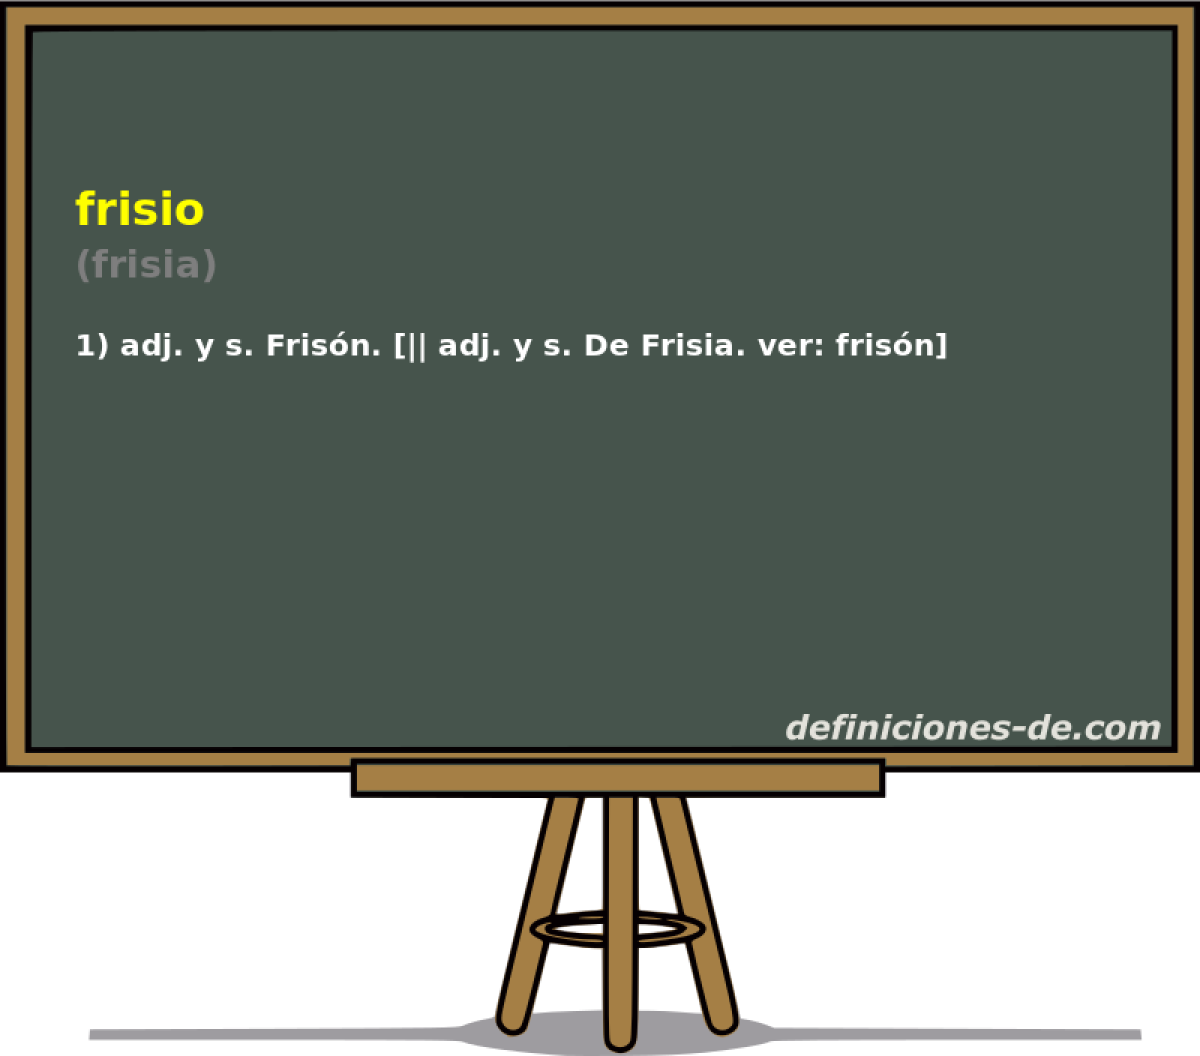 frisio (frisia)